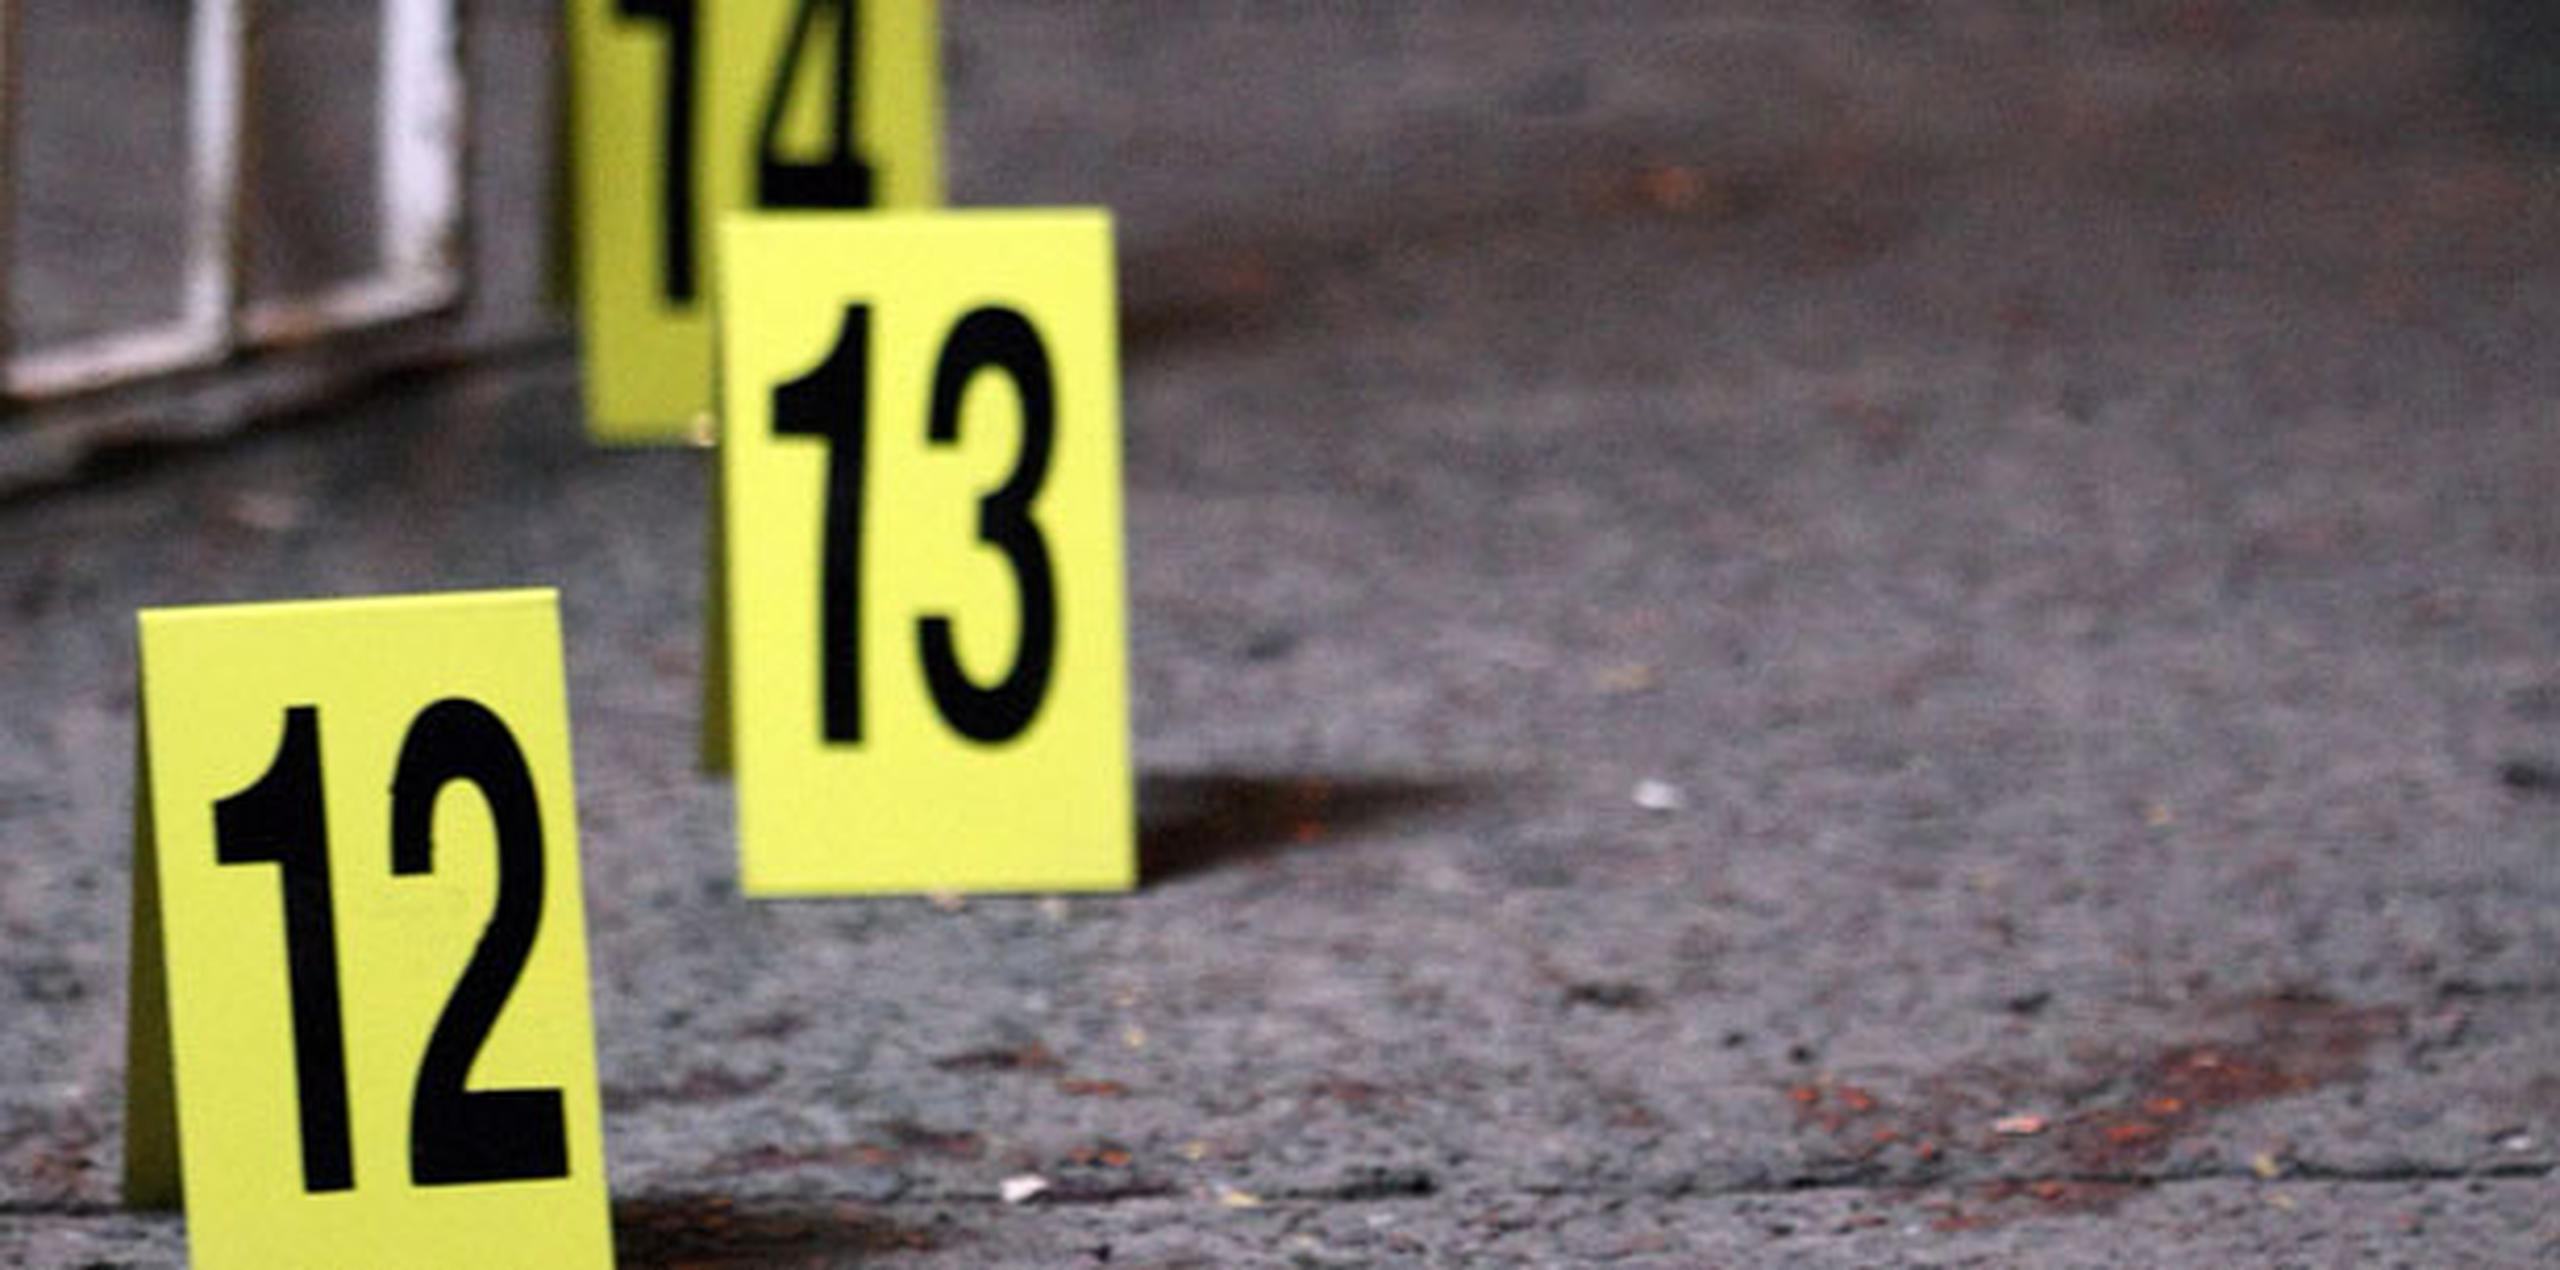 Según informó la Policía, un doble asesinato se reportó en la tarde de ayer en la calle Ruiseñor de la urbanización Country Club, en Río Piedras. (Archivo)